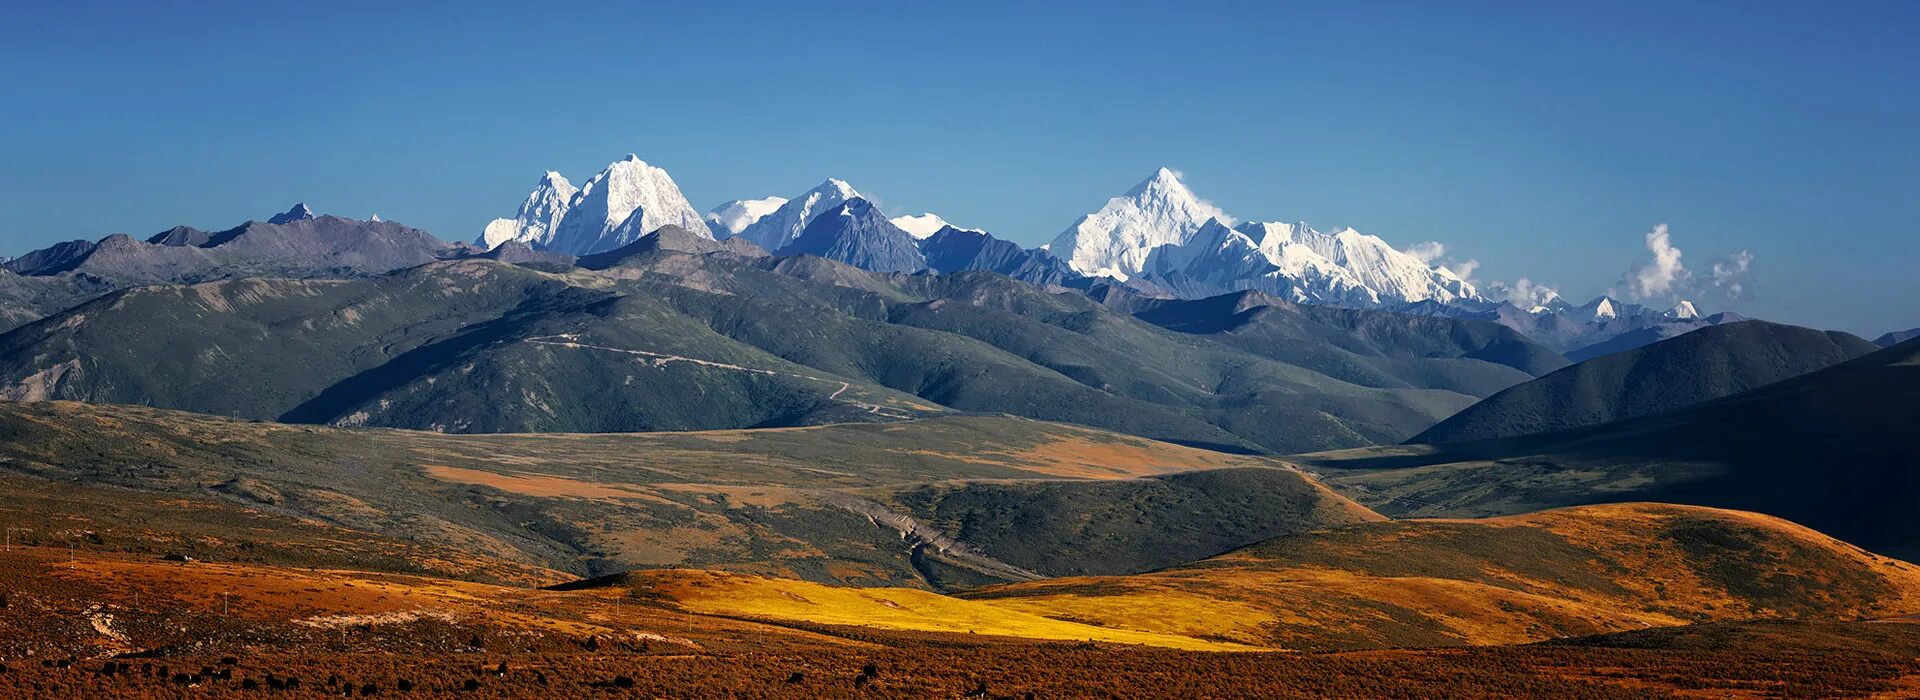 Священная гора 5 букв. Минья Конка гора. Горы Сычуань. Горы Узбекистана Сурхандарьинская область. Gongga Shan Mountain сверху.